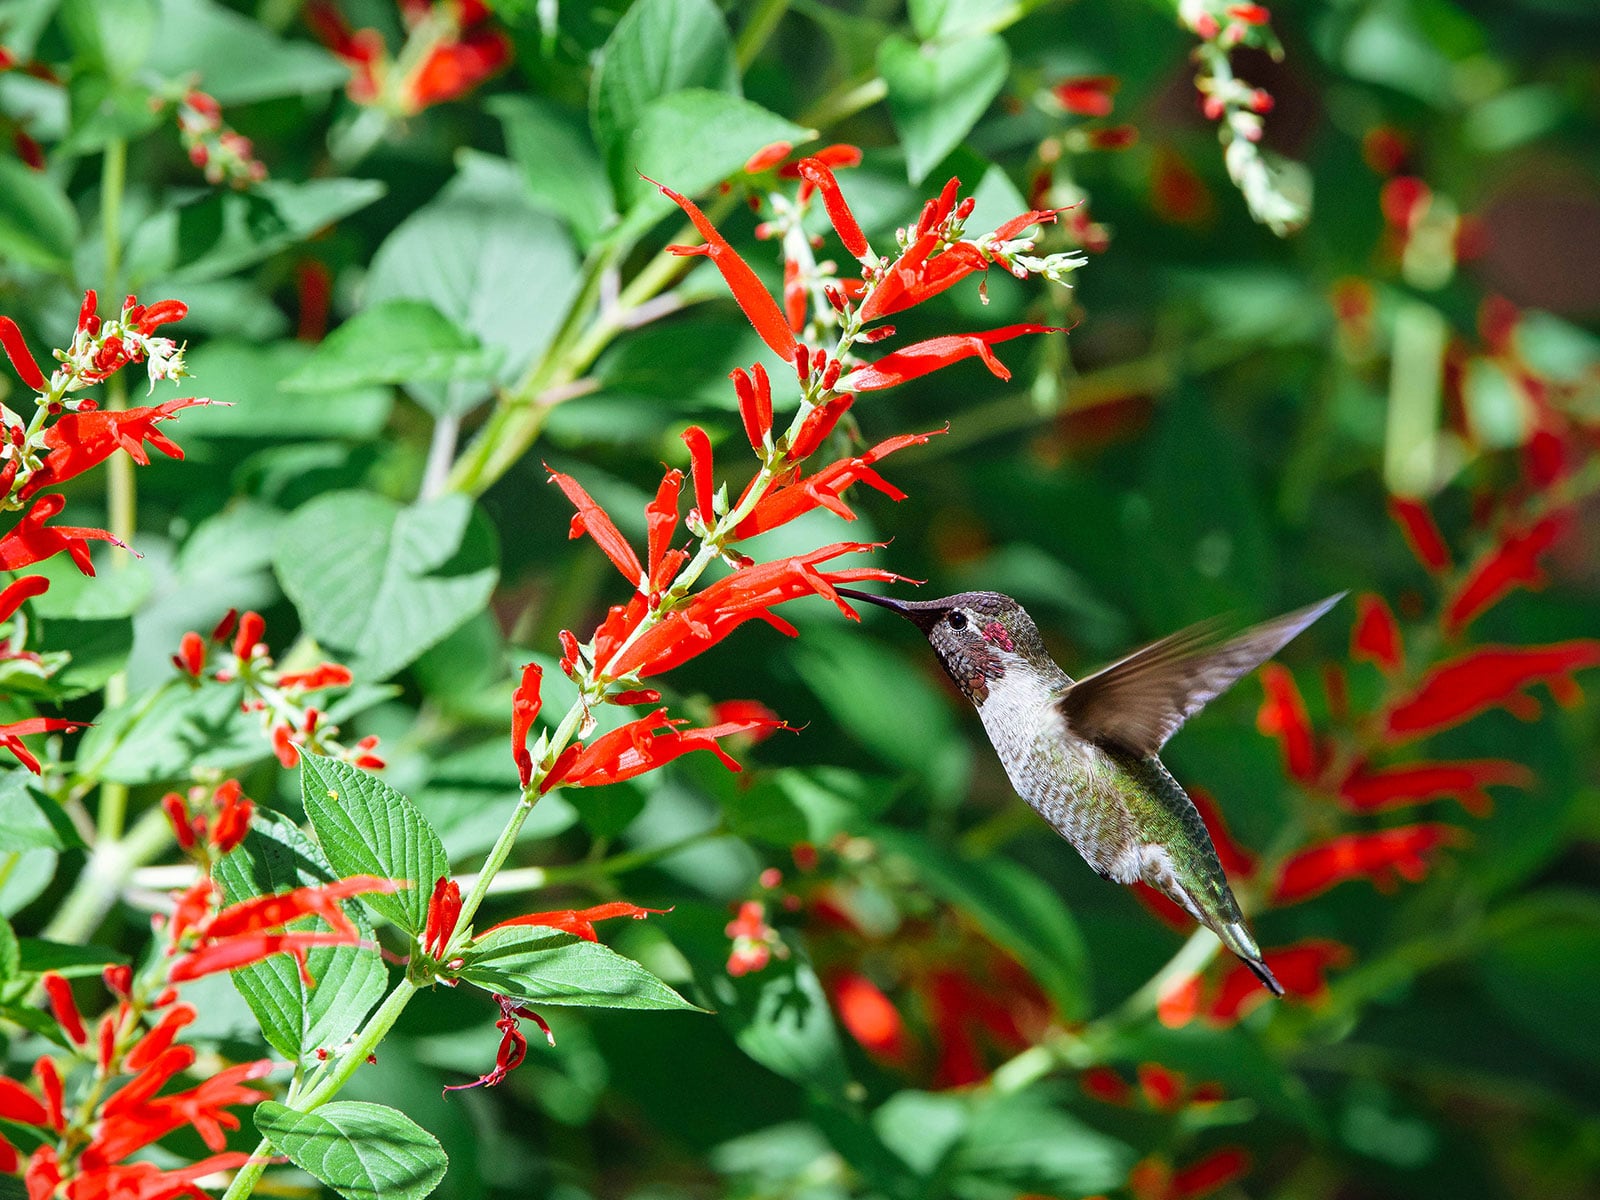 Hummingbird feeding on pineapple sage flowers